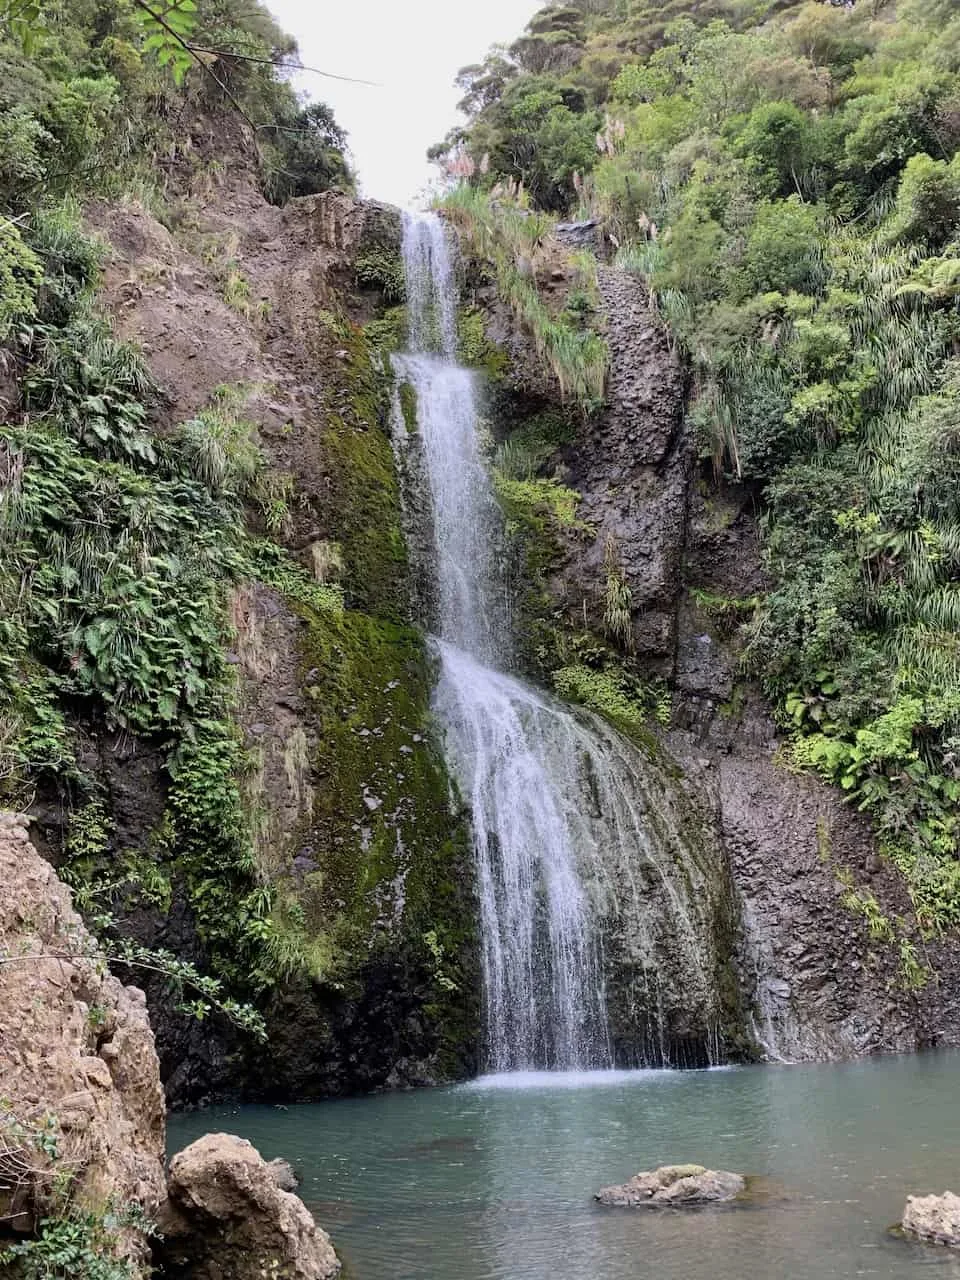 Kitekite Falls Waterfall